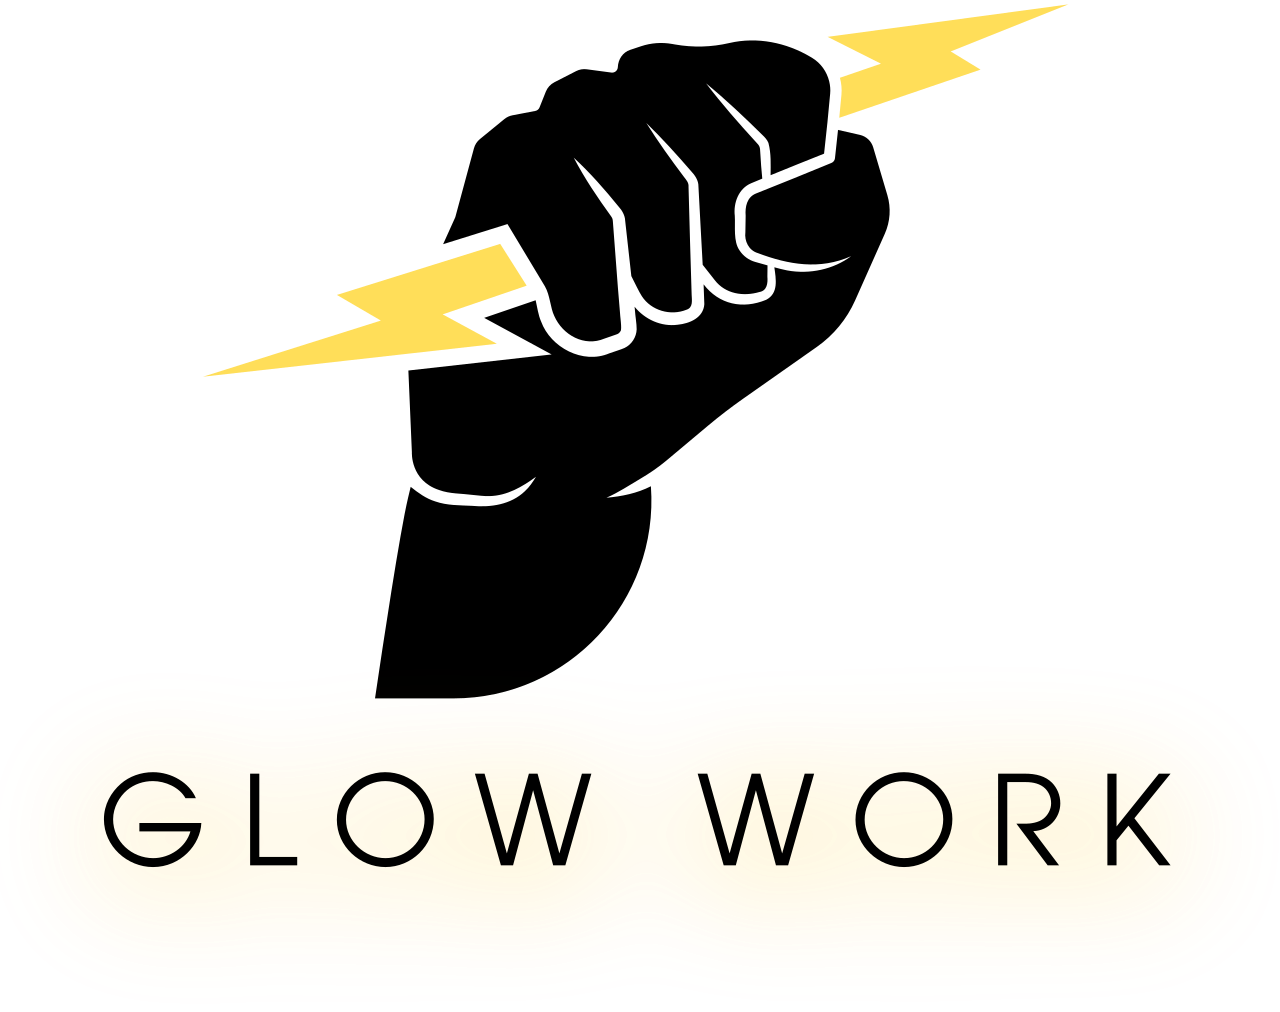 Glow work's logo